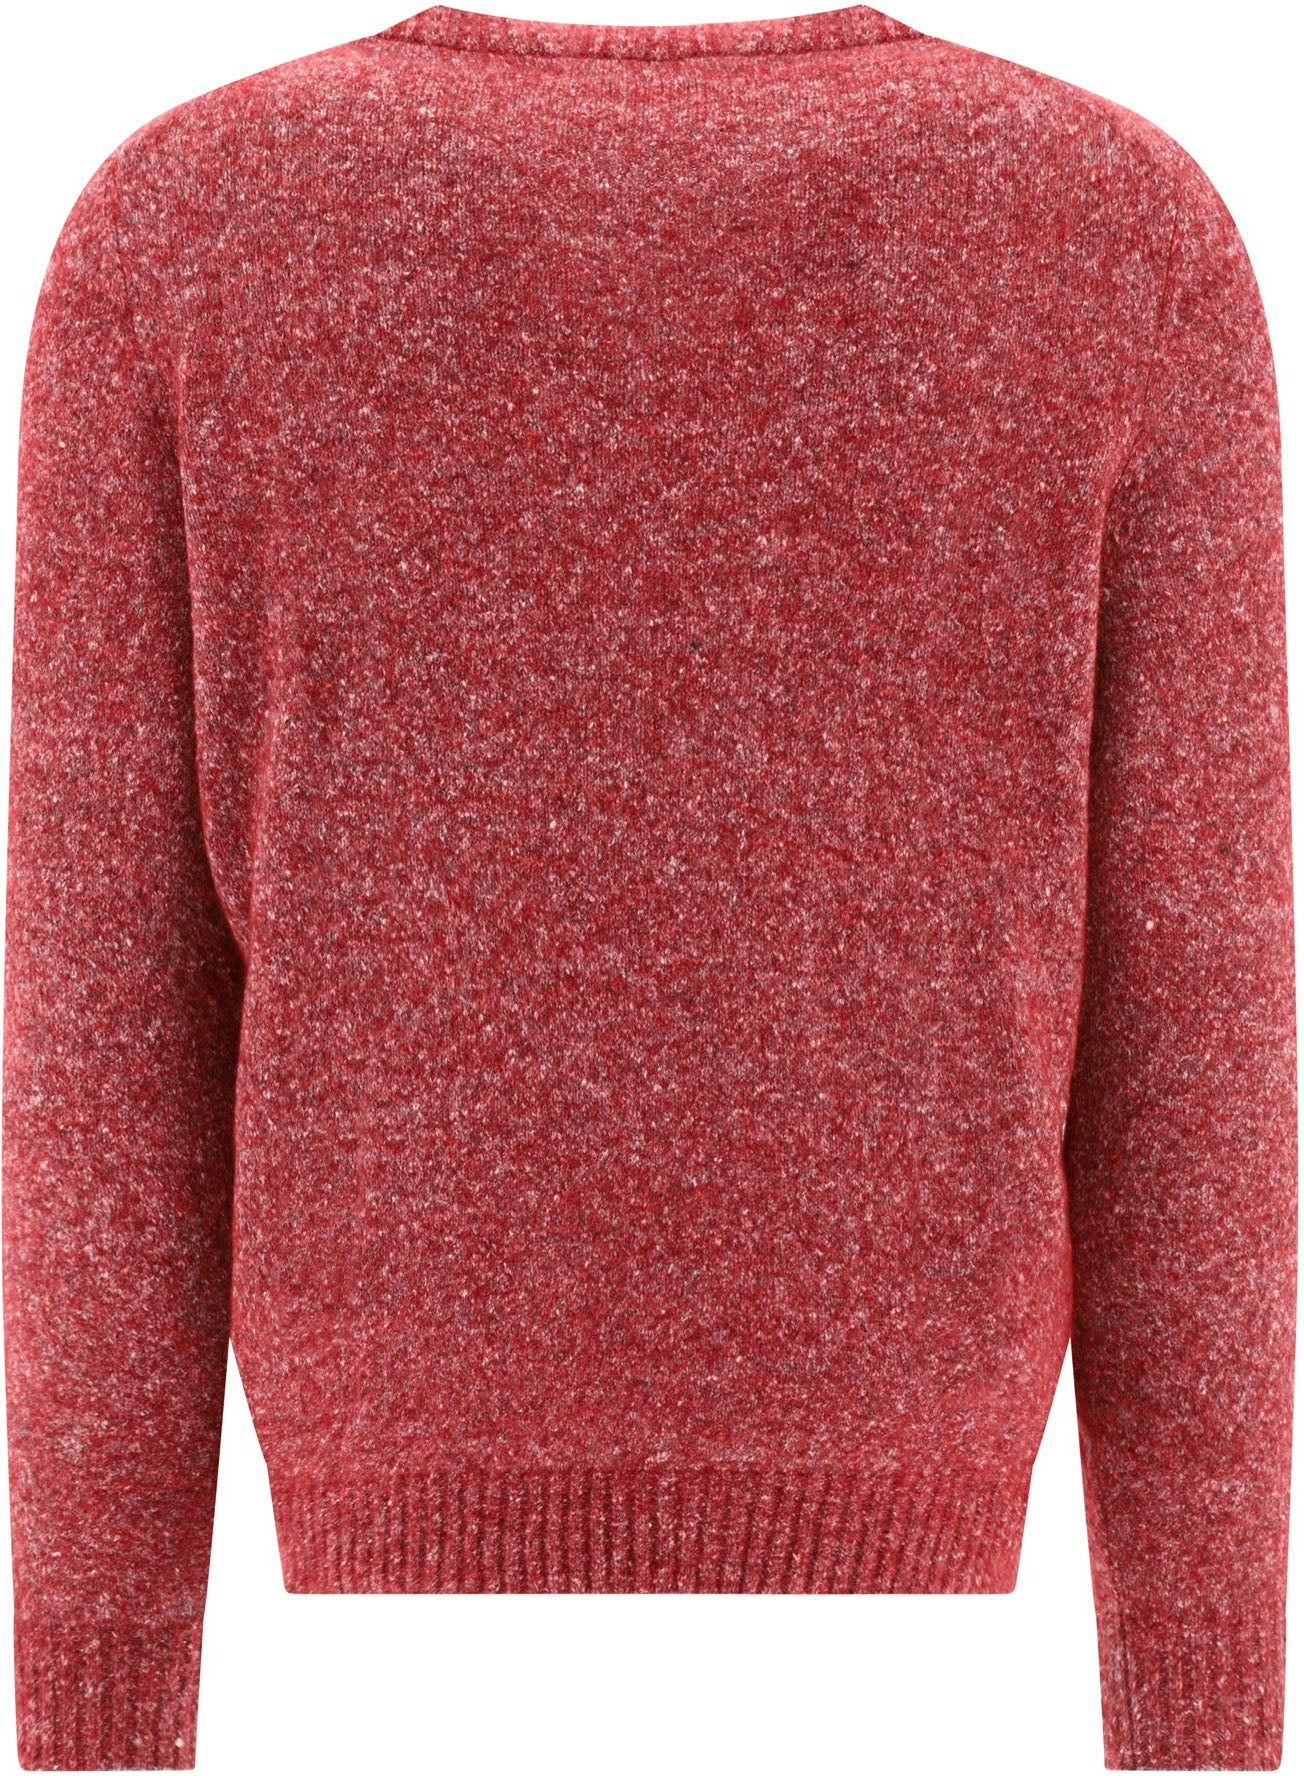 Brunello Cucinelli NWT 100% Cashmere V Neck Sweater Size 48 US